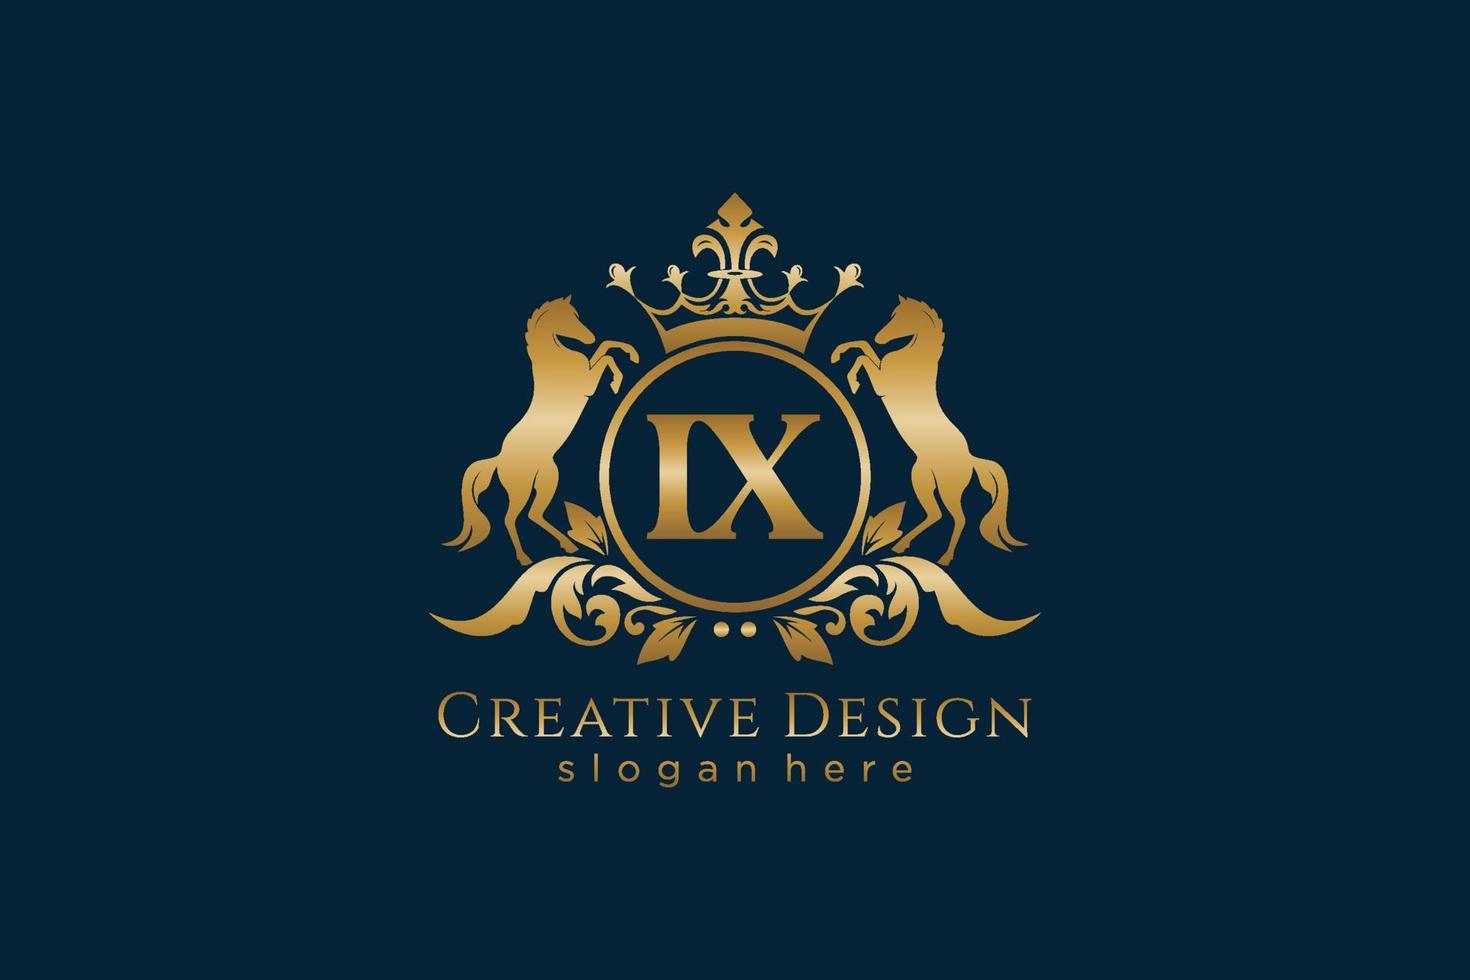 cresta dorada retro inicial ix con círculo y dos caballos, plantilla de insignia con pergaminos y corona real - perfecto para proyectos de marca de lujo vector